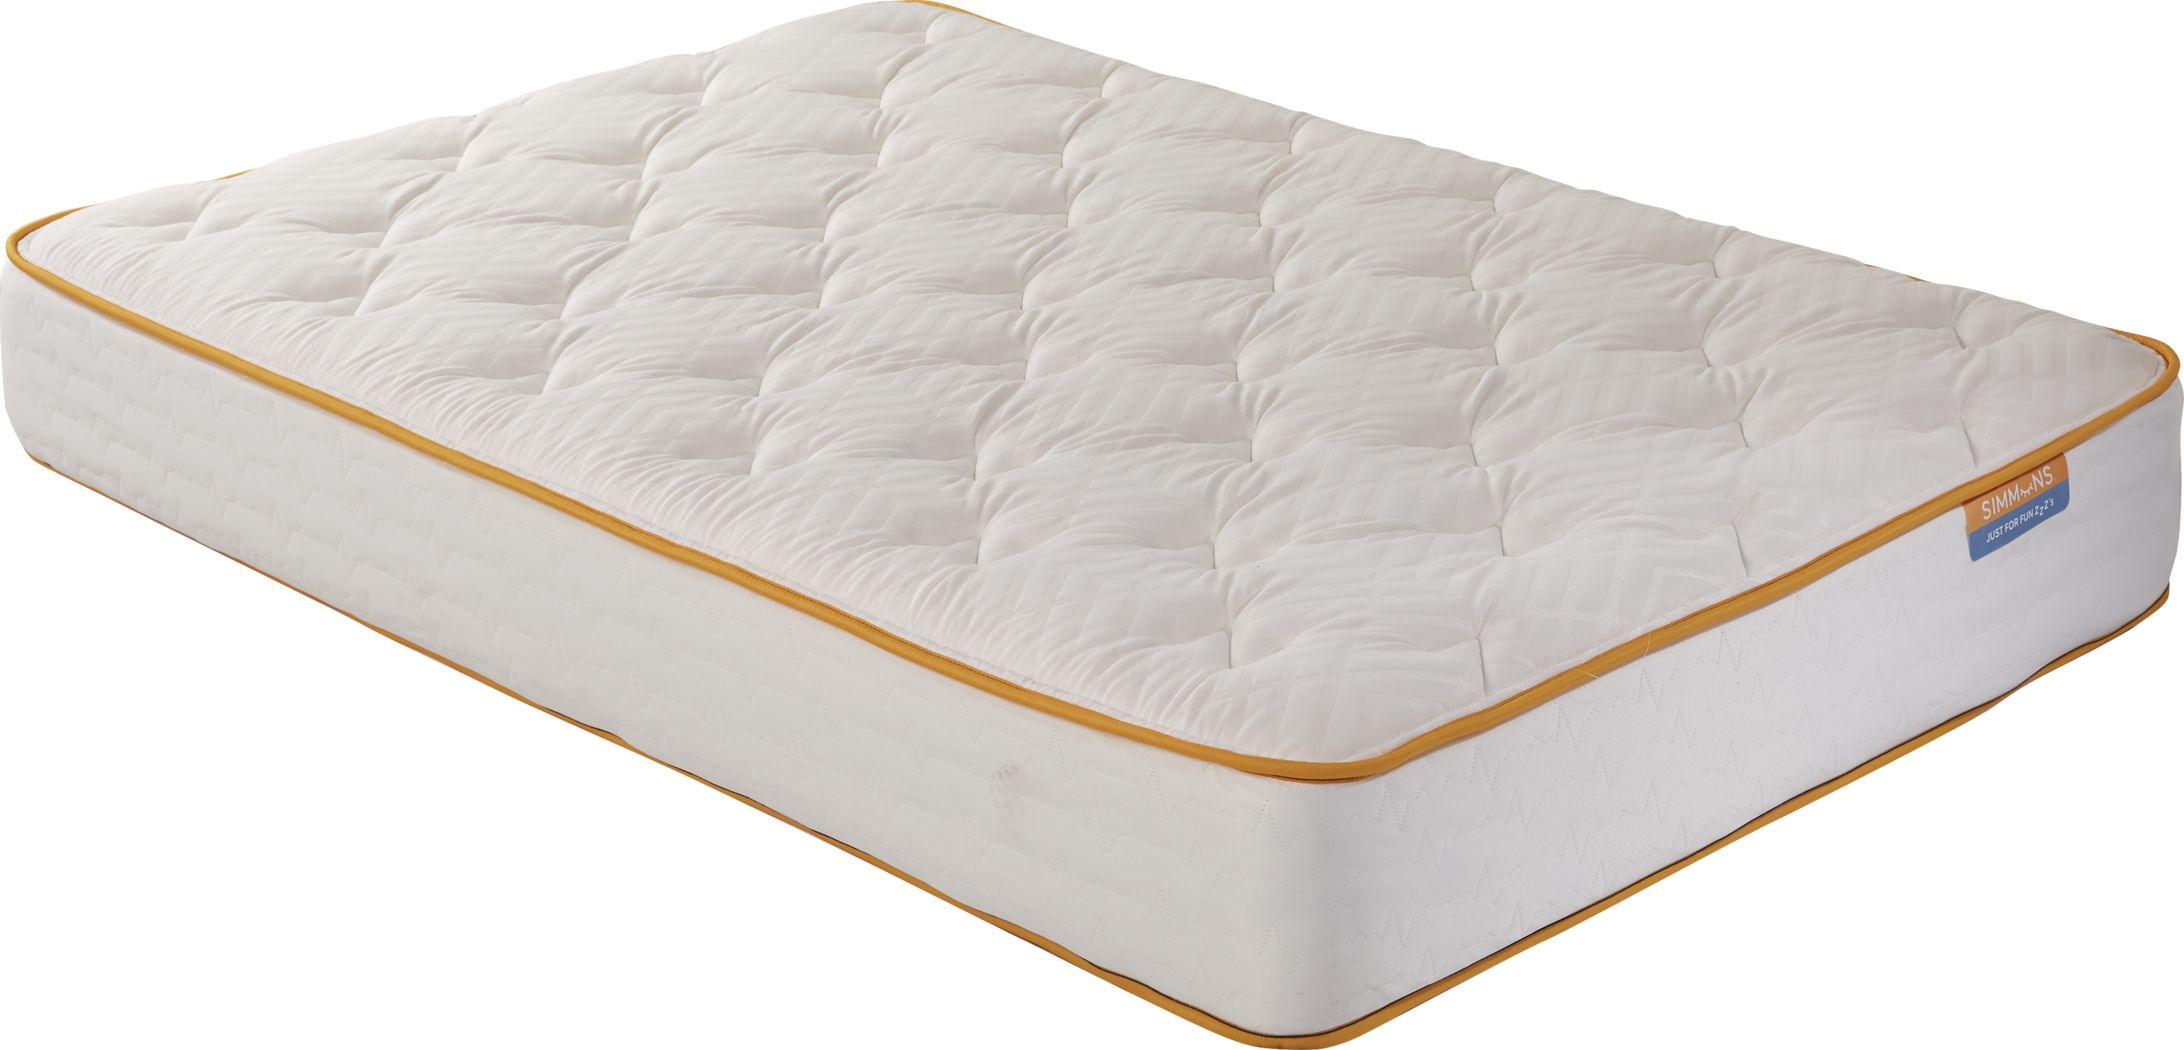 simmons full size air mattress